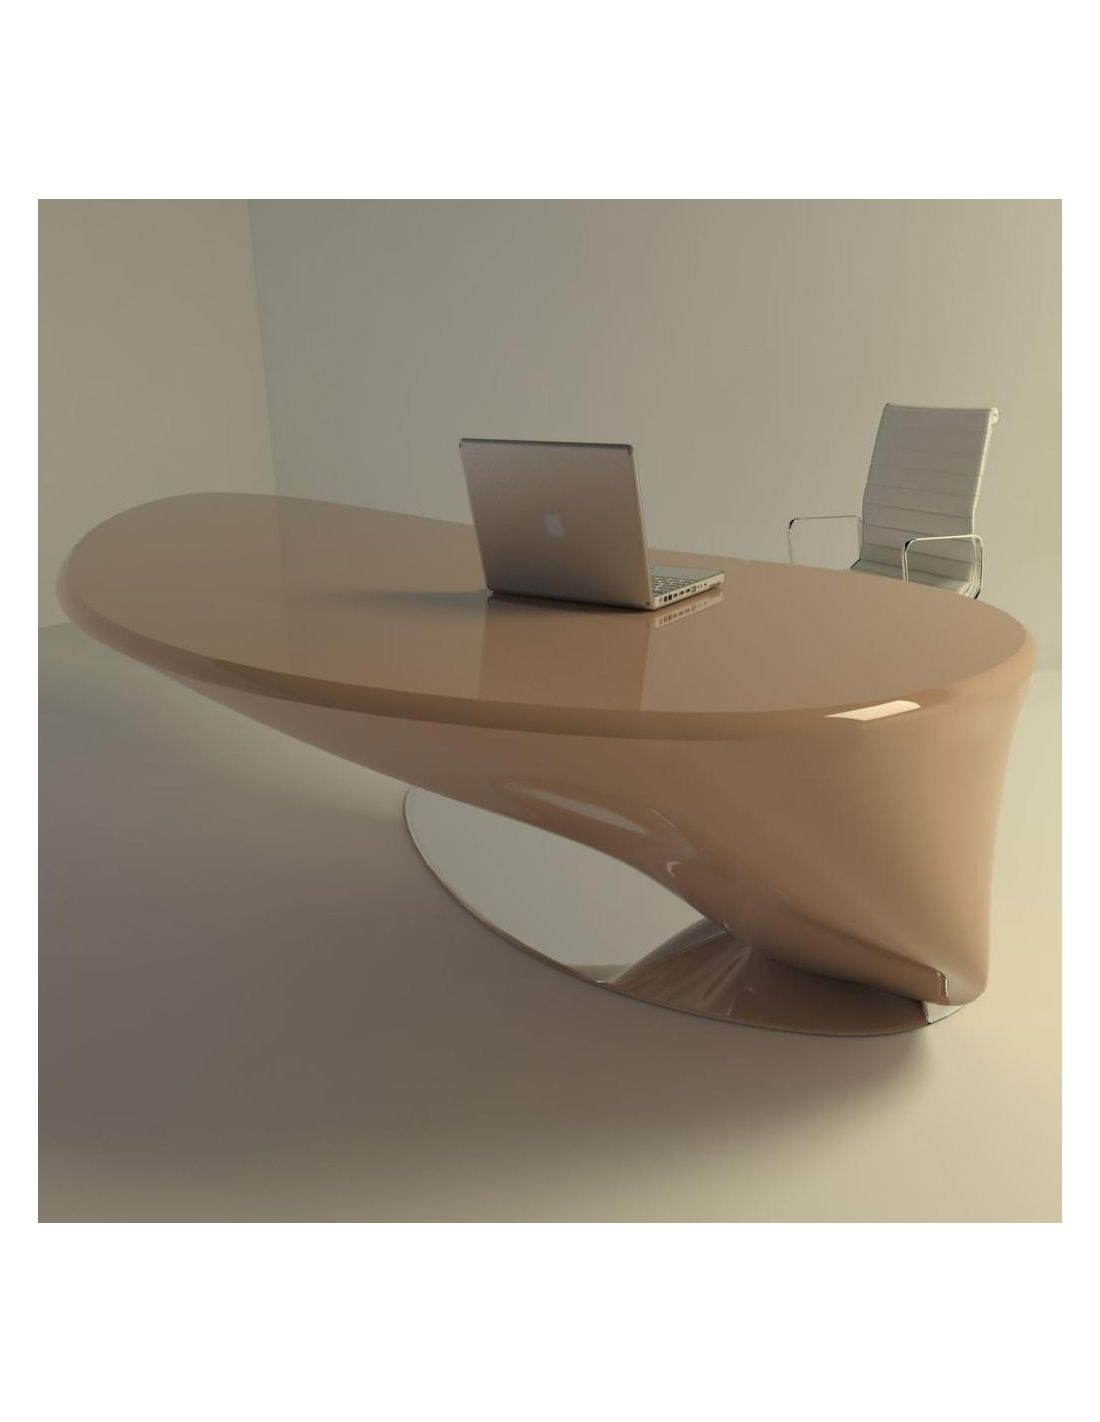 Atkinson tavolo scrivania per ufficio studio design moderno